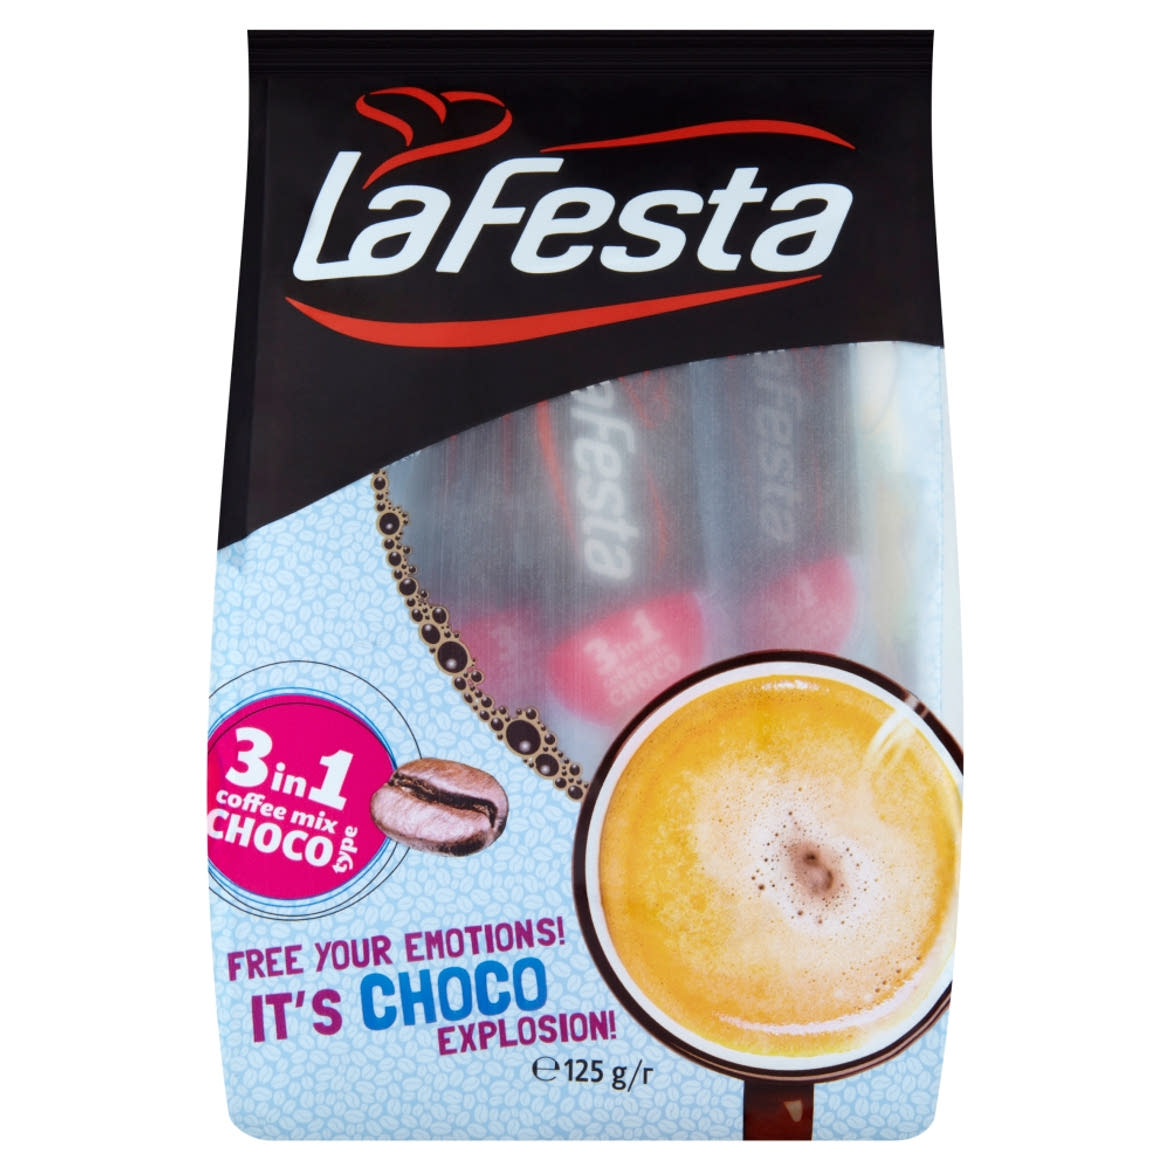 La Festa Choco 3in1 azonnal oldódó kávéspecialitás 10 x 12,5 g